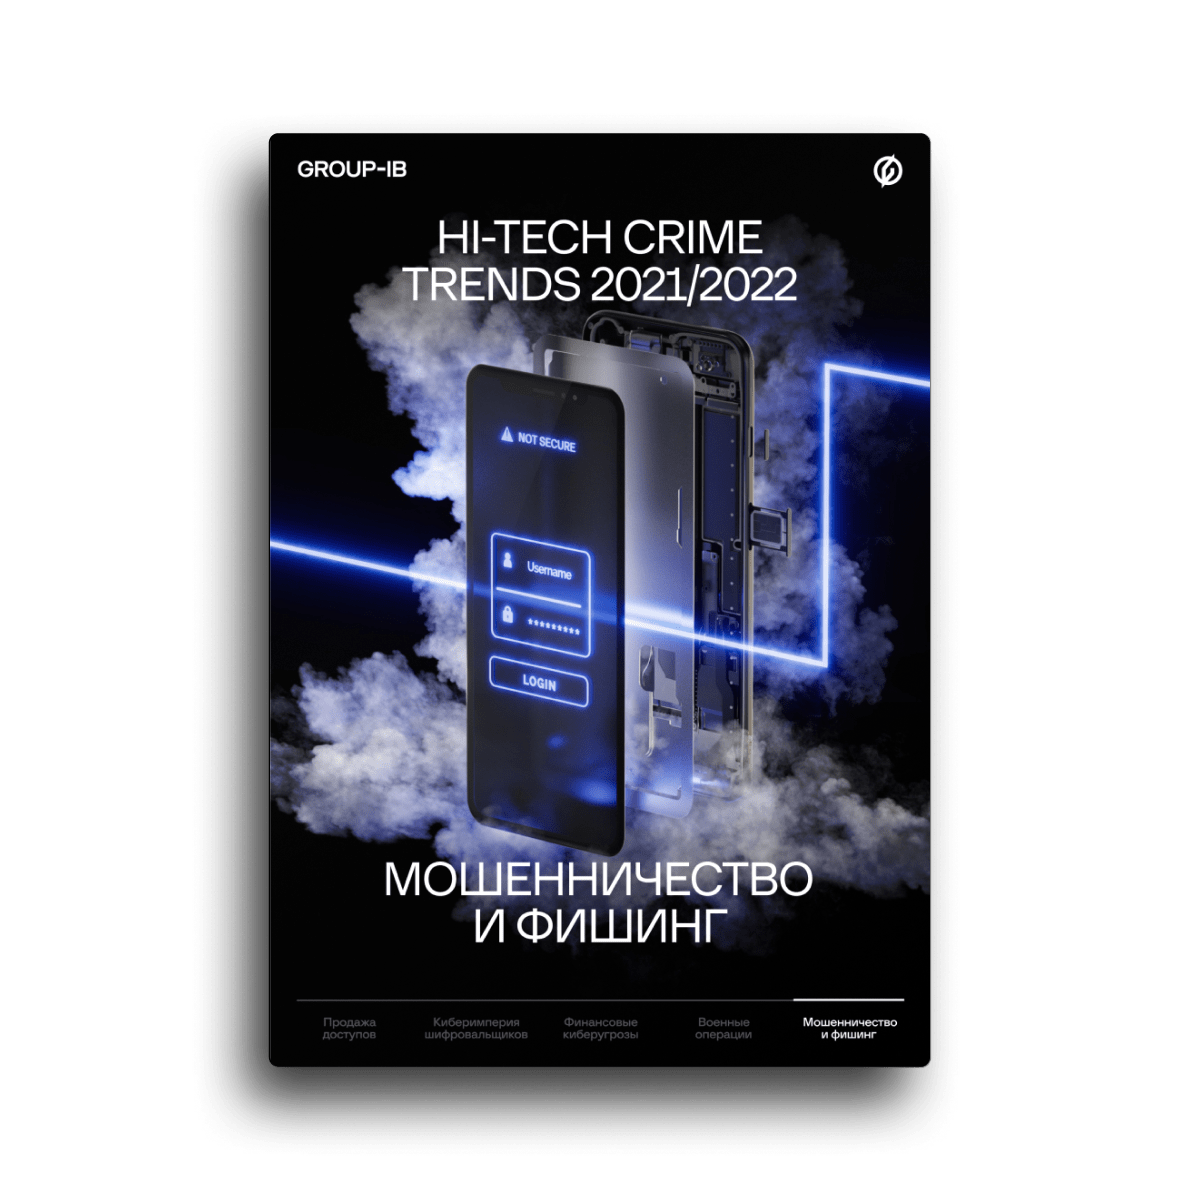 Hi-Tech Crime Trends 2021/2022. Скам и фишинг: Эпидемия онлайн-мошенничества